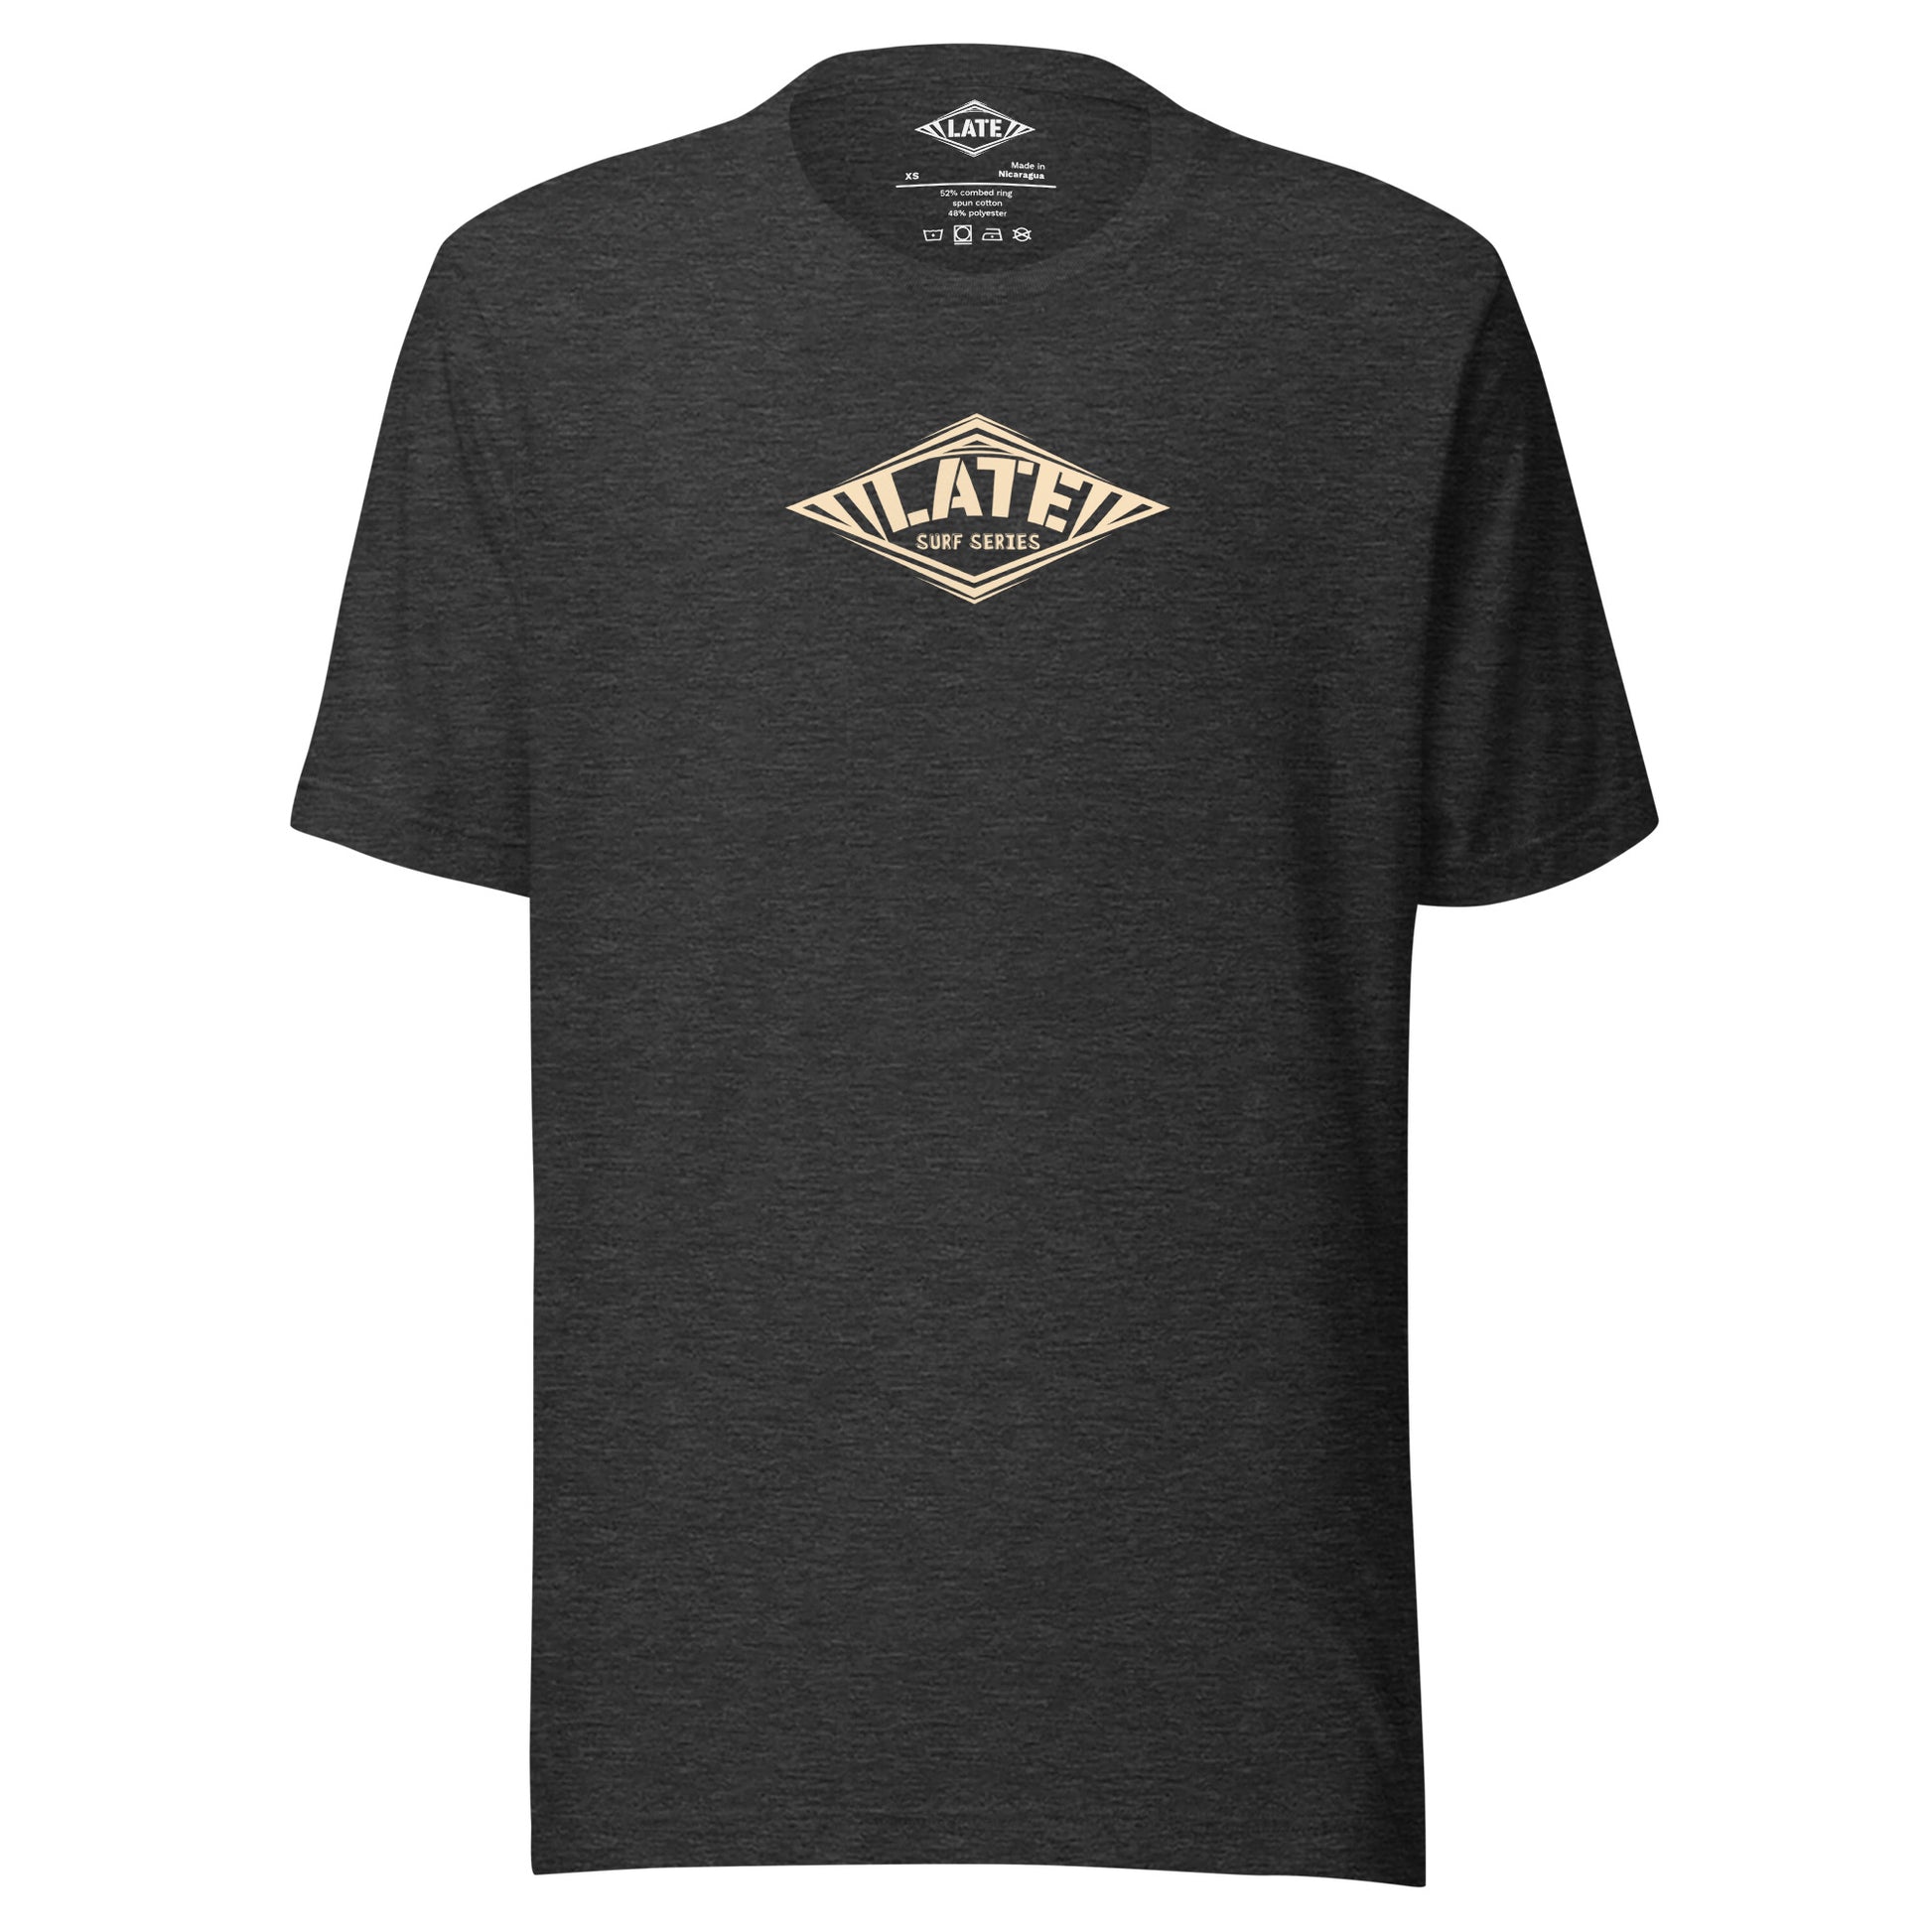 T-Shirt Take On The Elements style hurley texte surf series, et logo Late tshirt de face couleur gris foncé